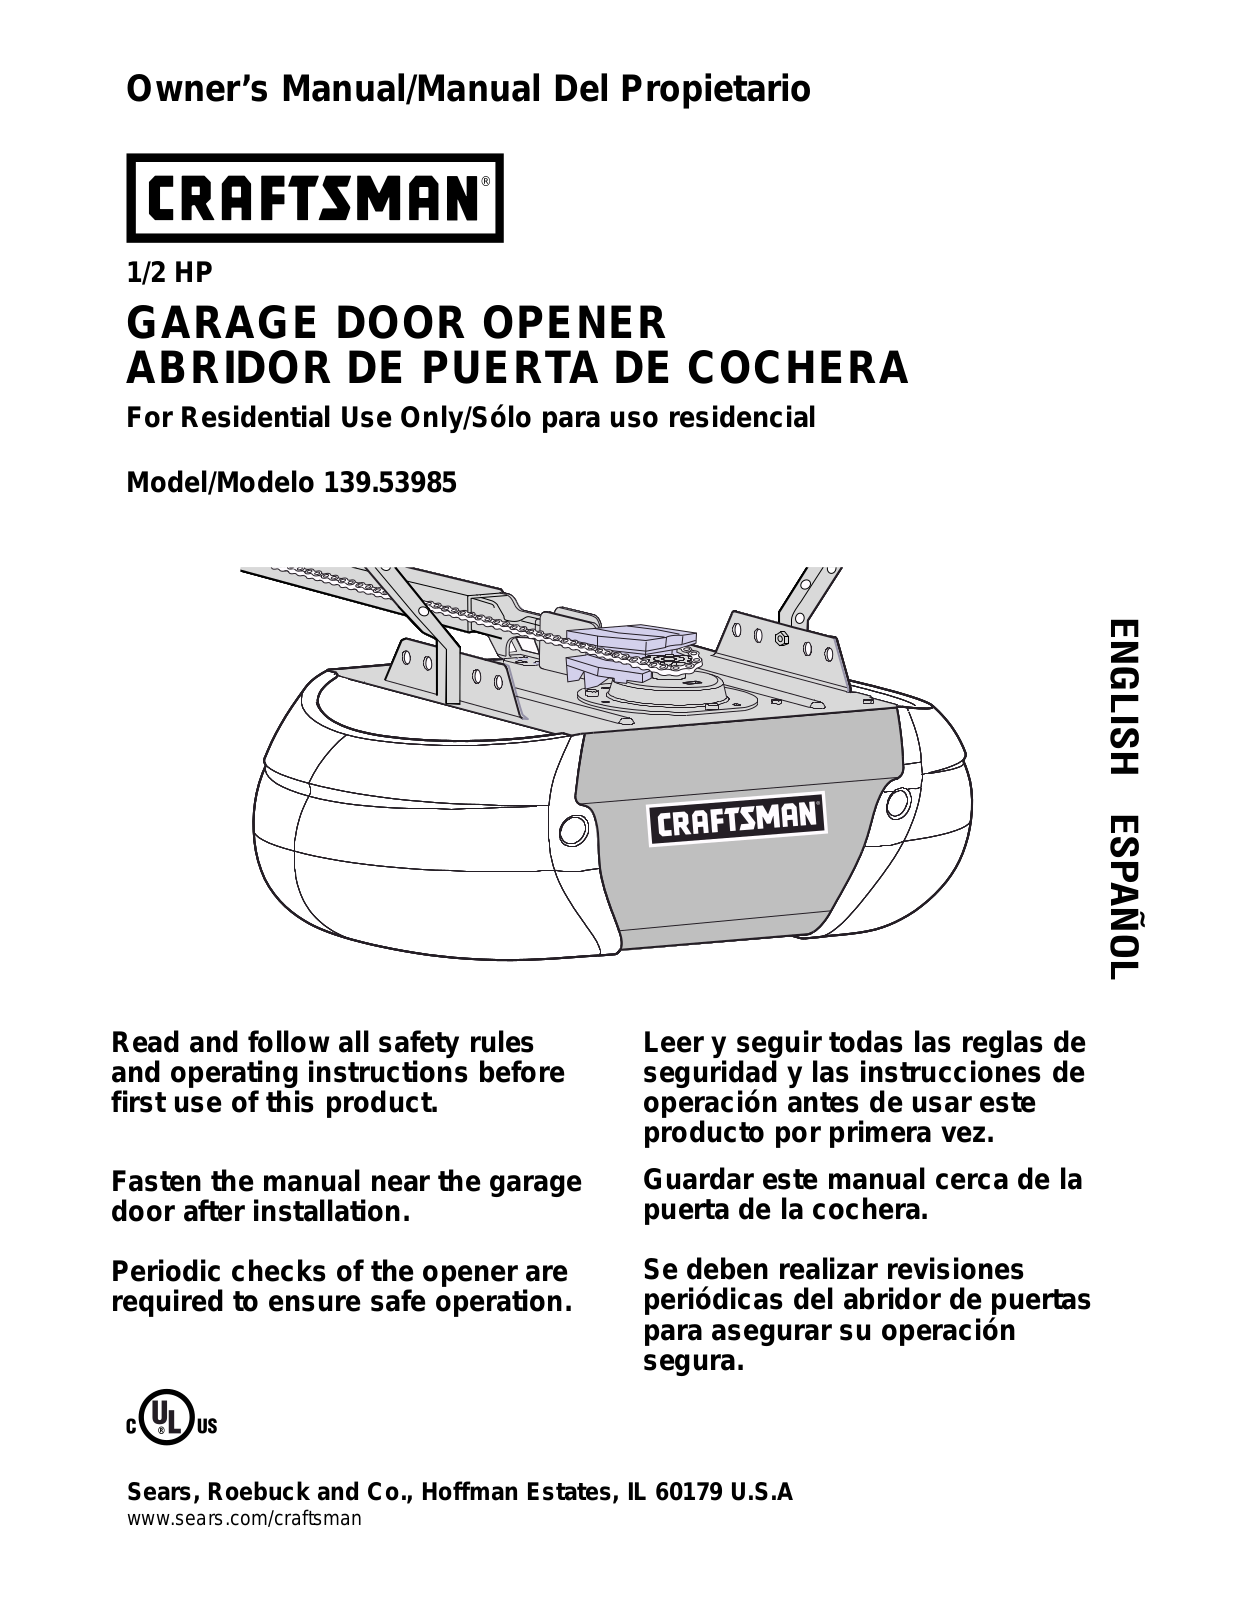 Craftsman 13953985 User Manual